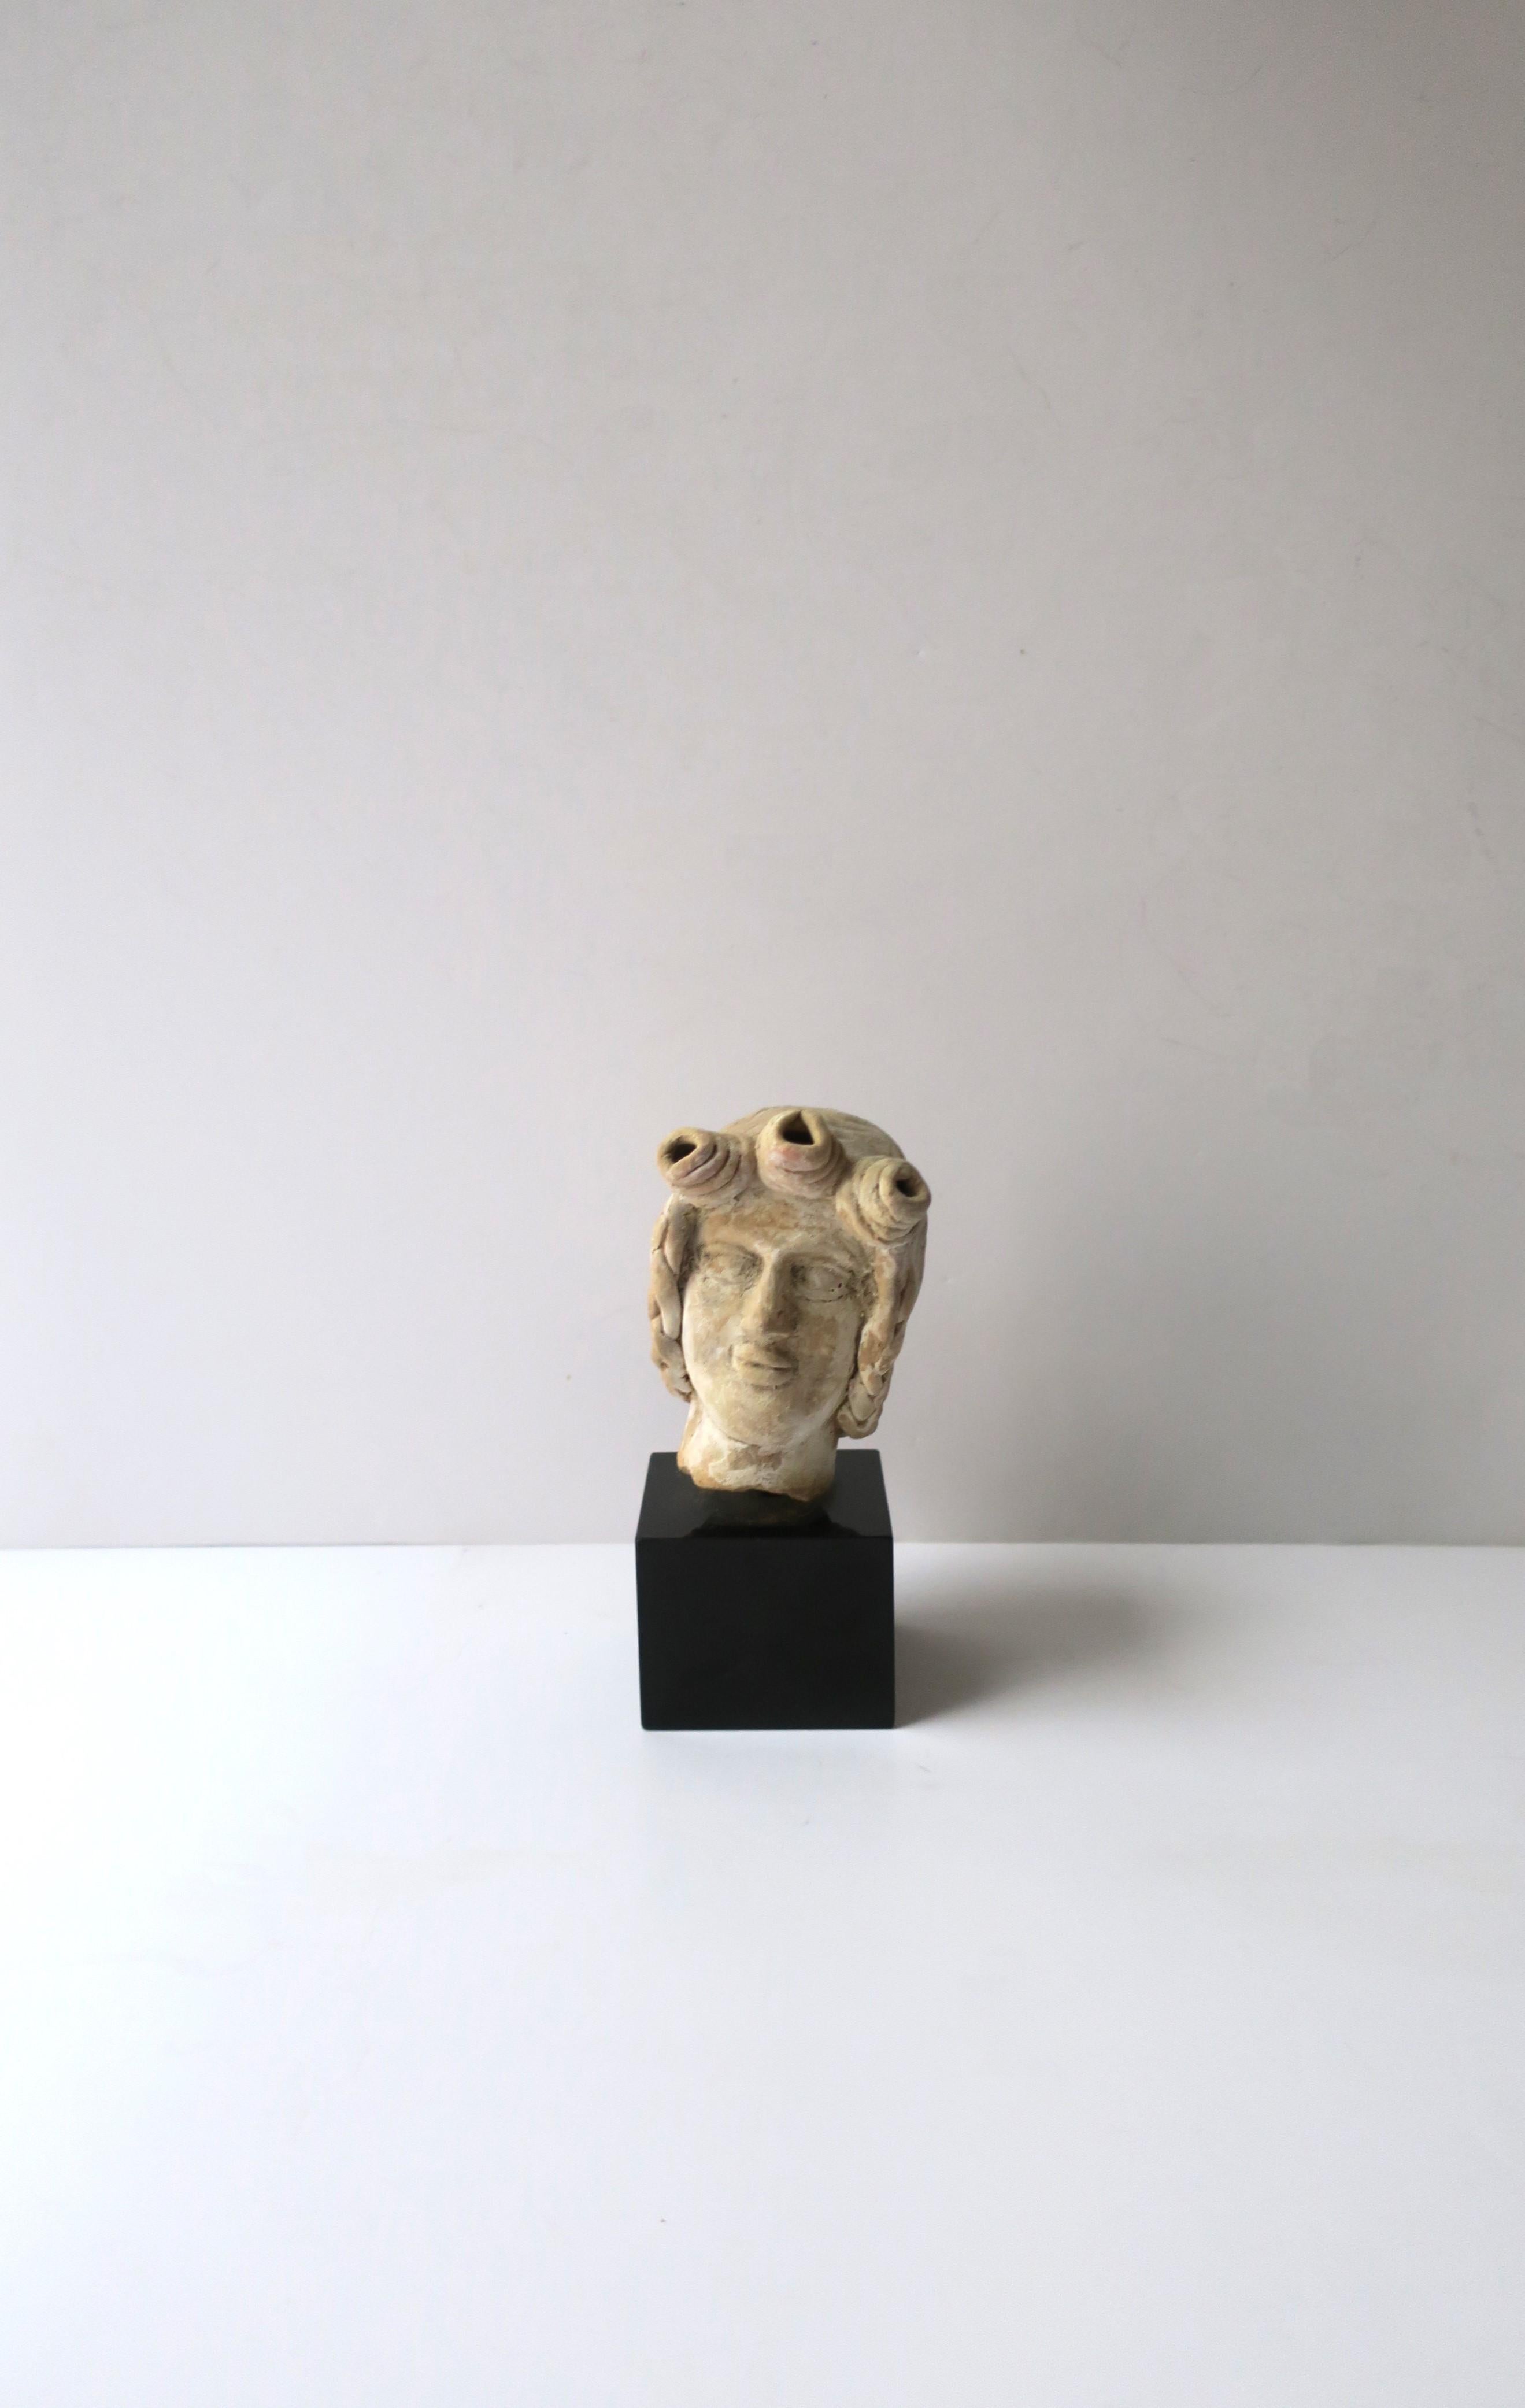 Eine schöne handgefertigte Terrakotta-Kopfbüste auf einem Sockel aus schwarzem belgischem Marmor, Europa, Griechenland. Das genaue Datum ist nicht bekannt. Künstler/Bildhauer unbekannt. Diese schöne Skulptur kann gut auf einem Beistelltisch, einer